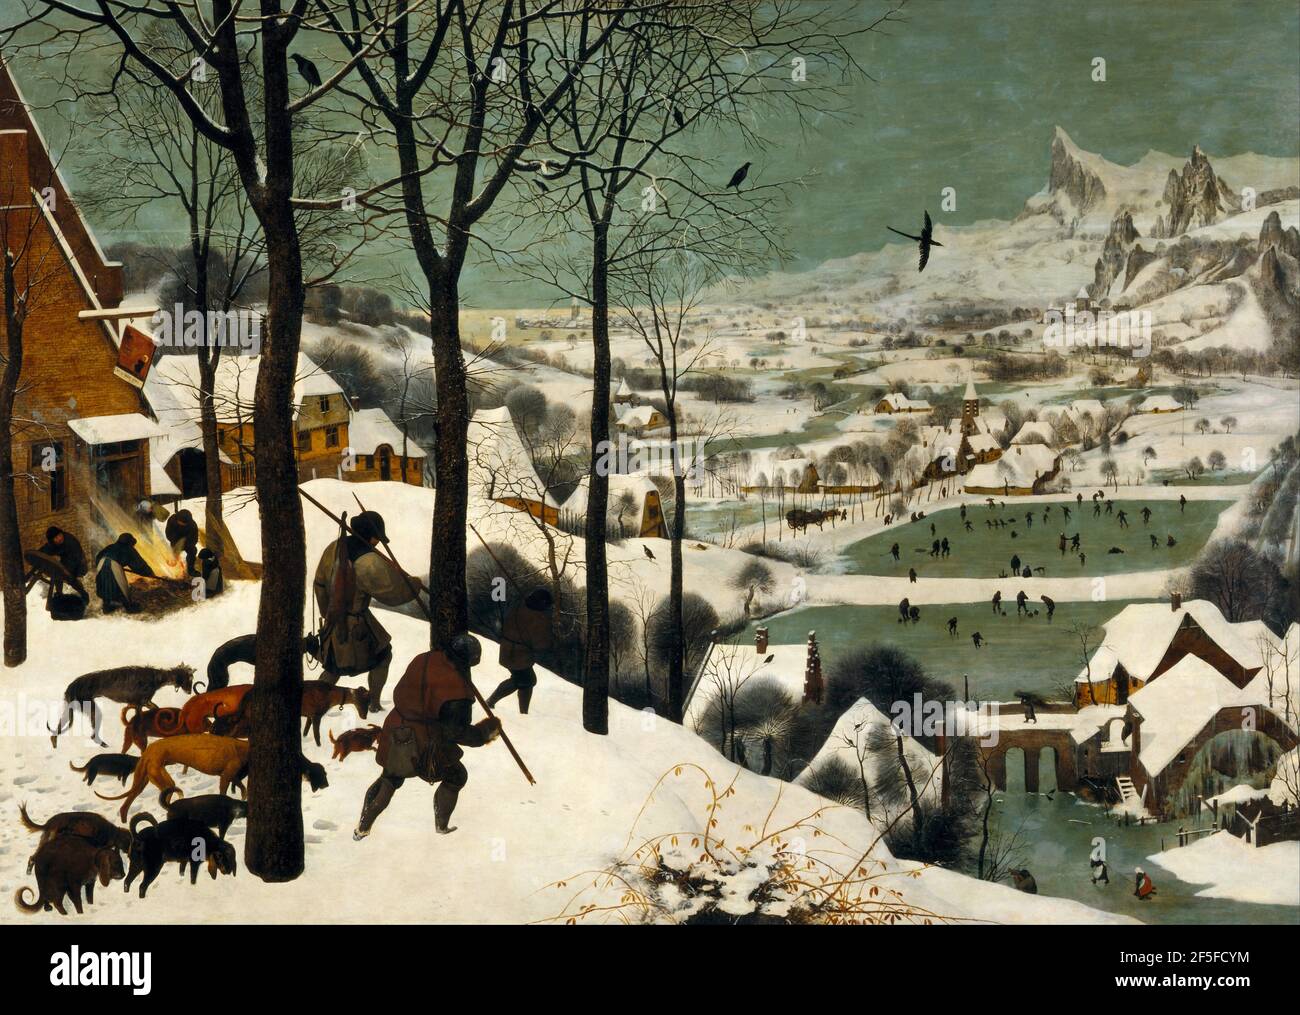 Titolo: Cacciatori nella neve Creatore: Pieter Bruegel il Vecchio Data: 1565 Medium: Olio su tela dimensioni: 117 x 162 cms Località: Kunsthistorisches Museum, Vienna, Austria Foto Stock